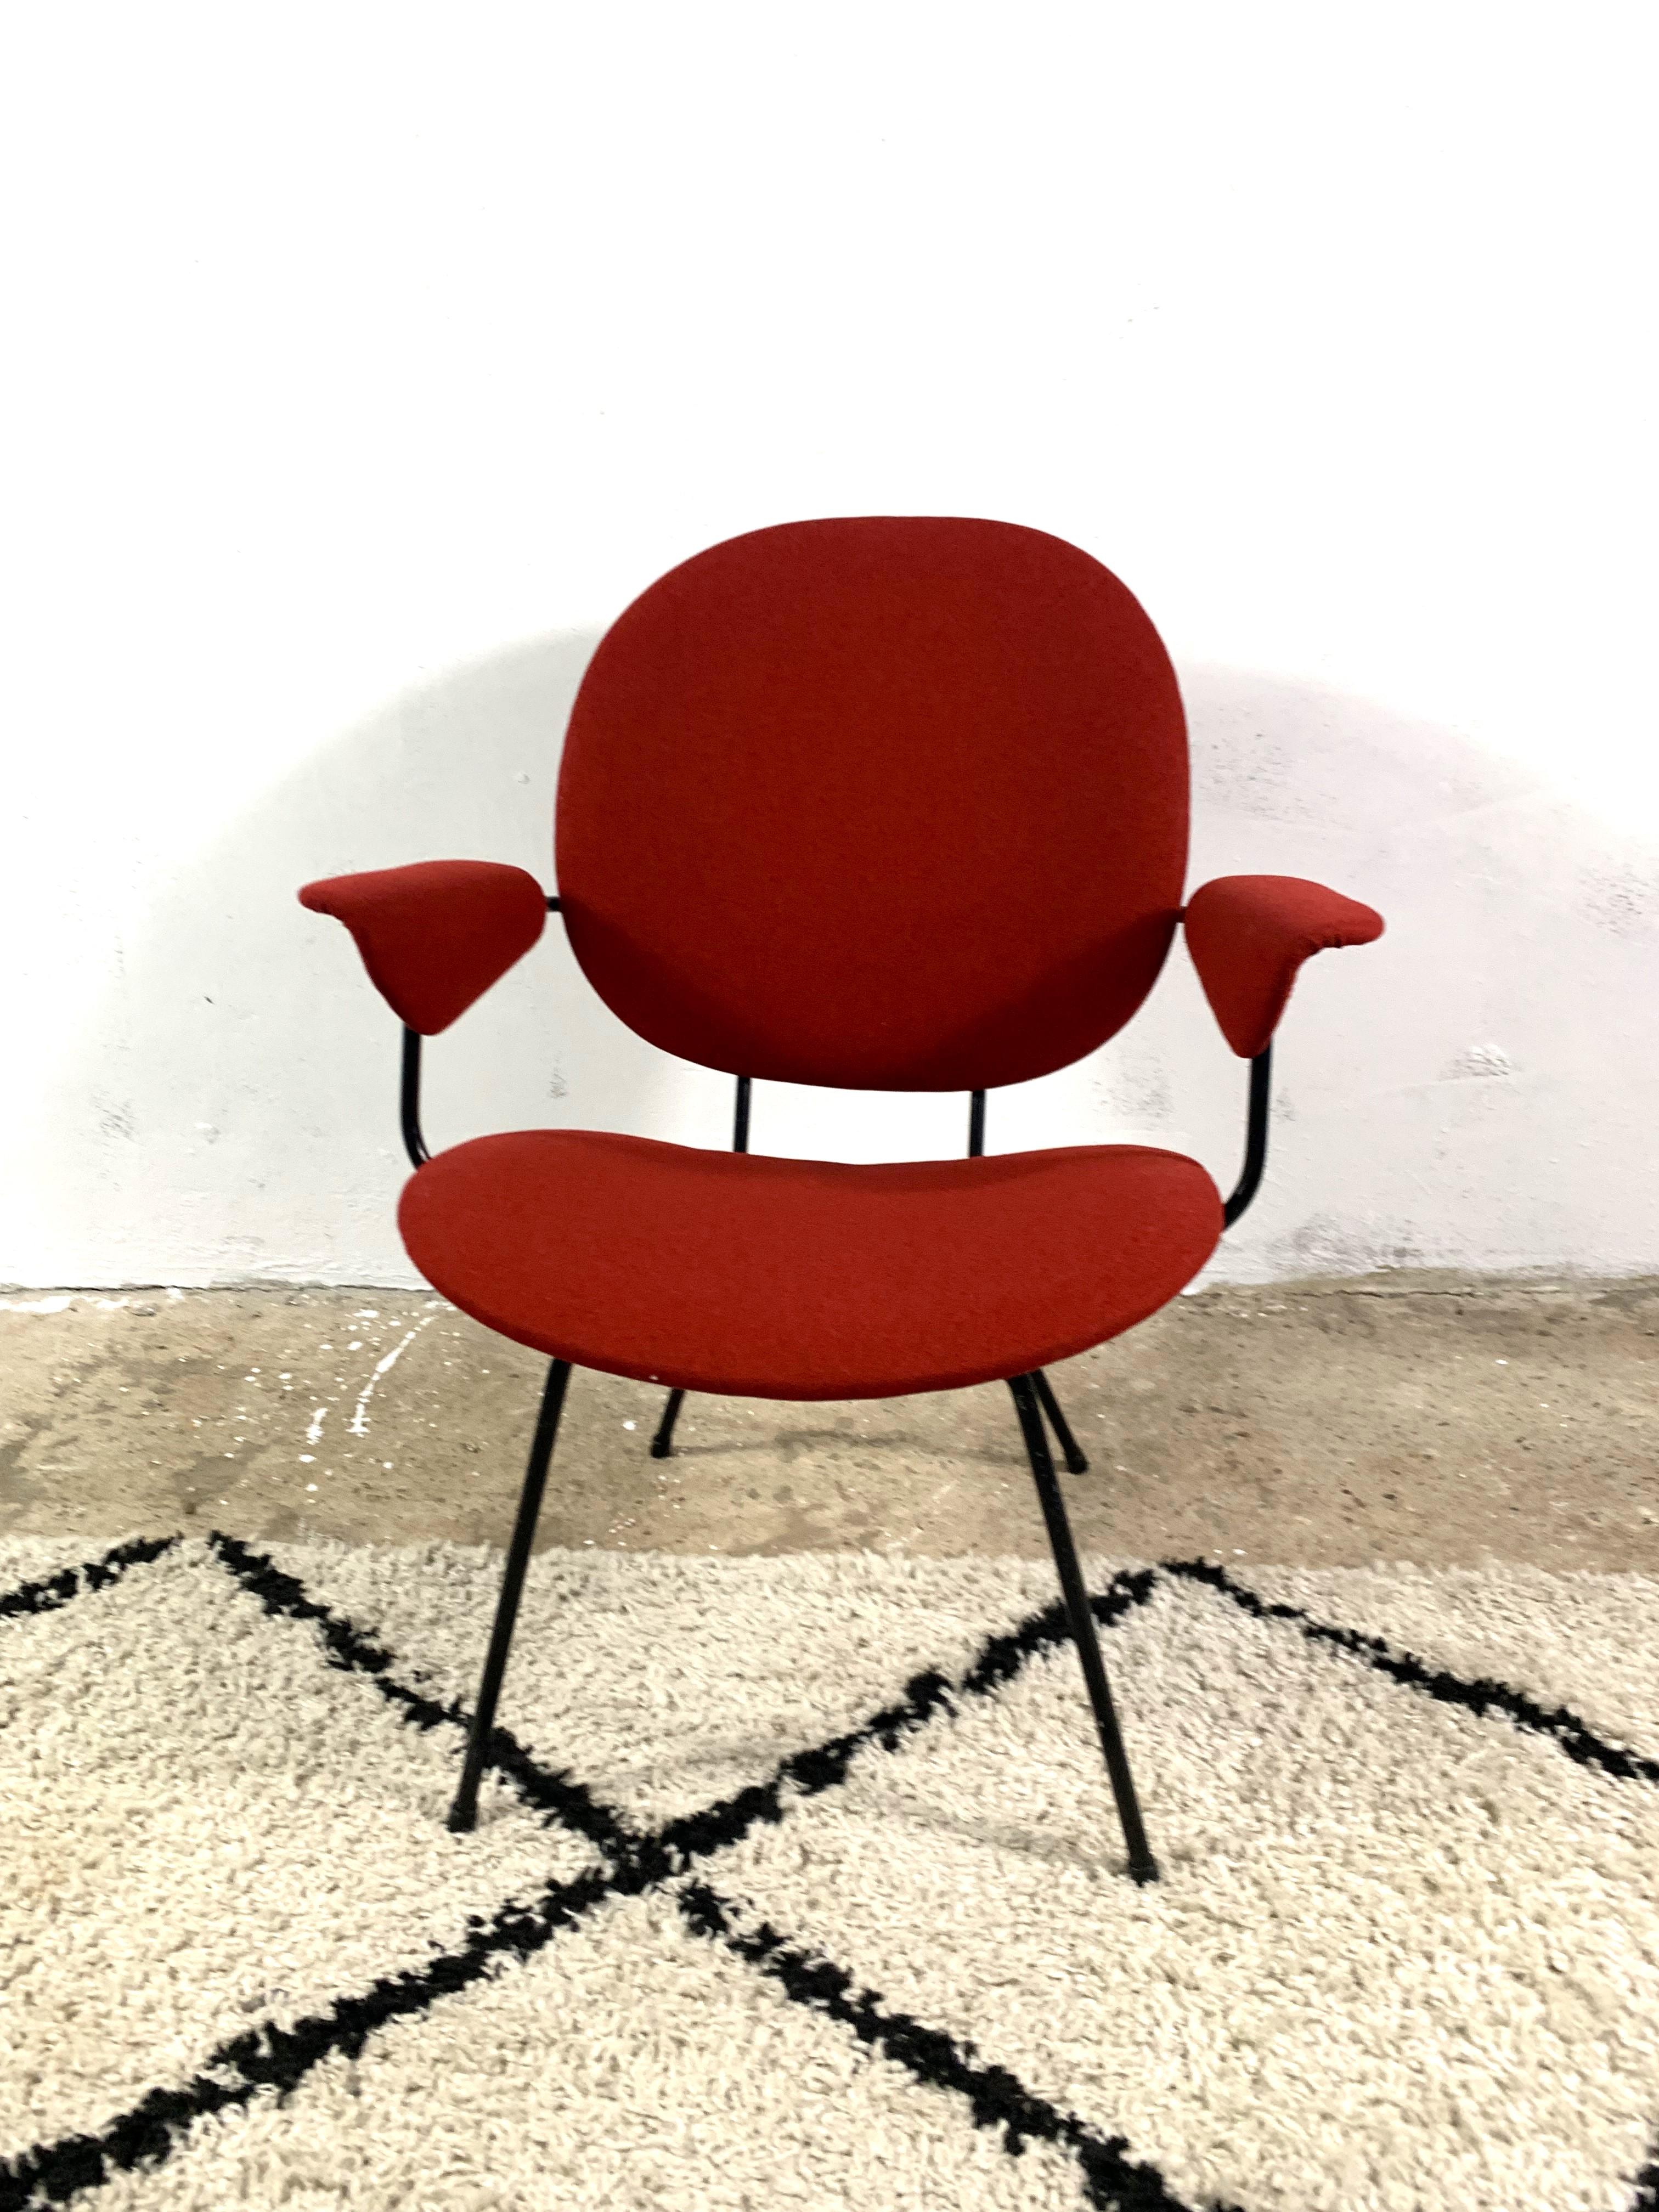 Wunderschöner Sessel, entworfen von Willem Hendrik Gispen für das Label Kembo. Modelle  302, eine Version mit Armlehnen. Die Sitze haben eine neue Füllung und eine neue Polsterung aus spanischem Stoff, einem Gemisch aus Wolle und Polyester, das die